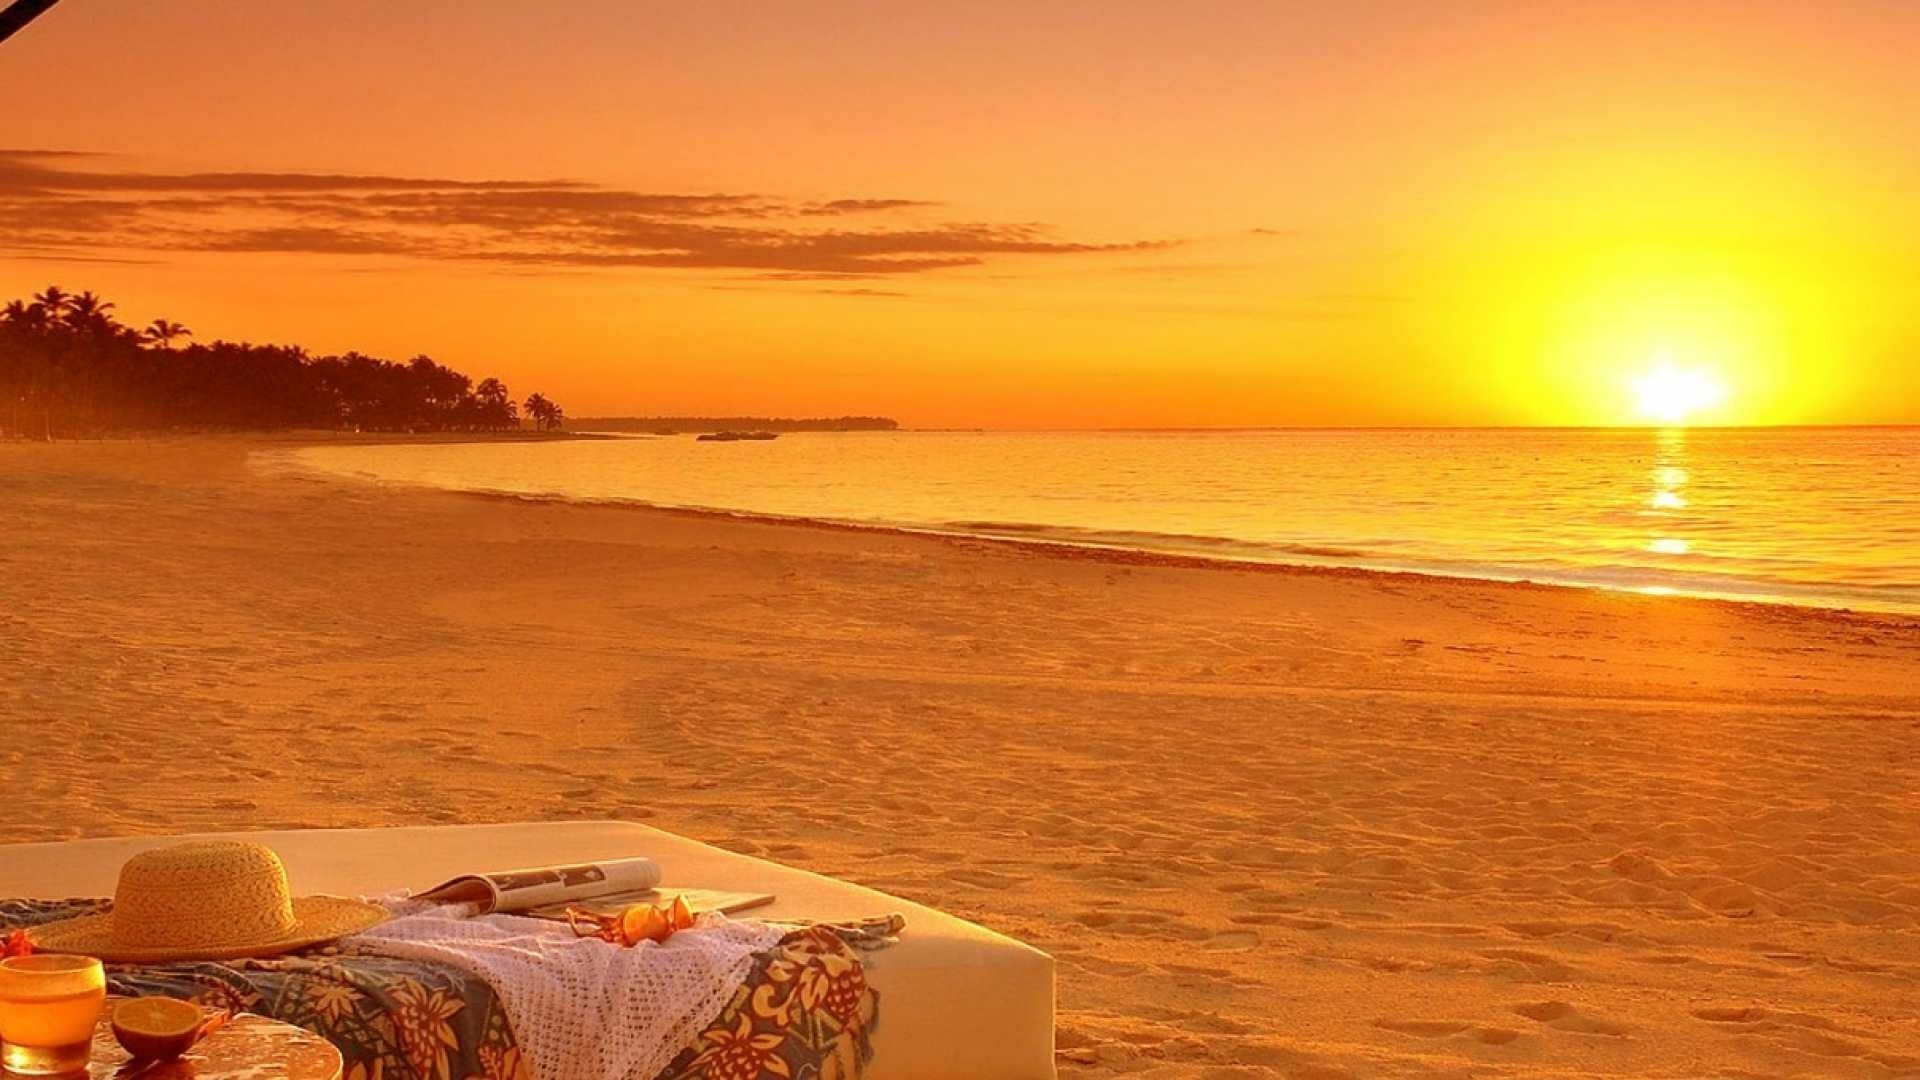 Теплое солнечное утро. Солнце пляж. Море солнце пляж. Вечерний пляж. Море солнце песок.